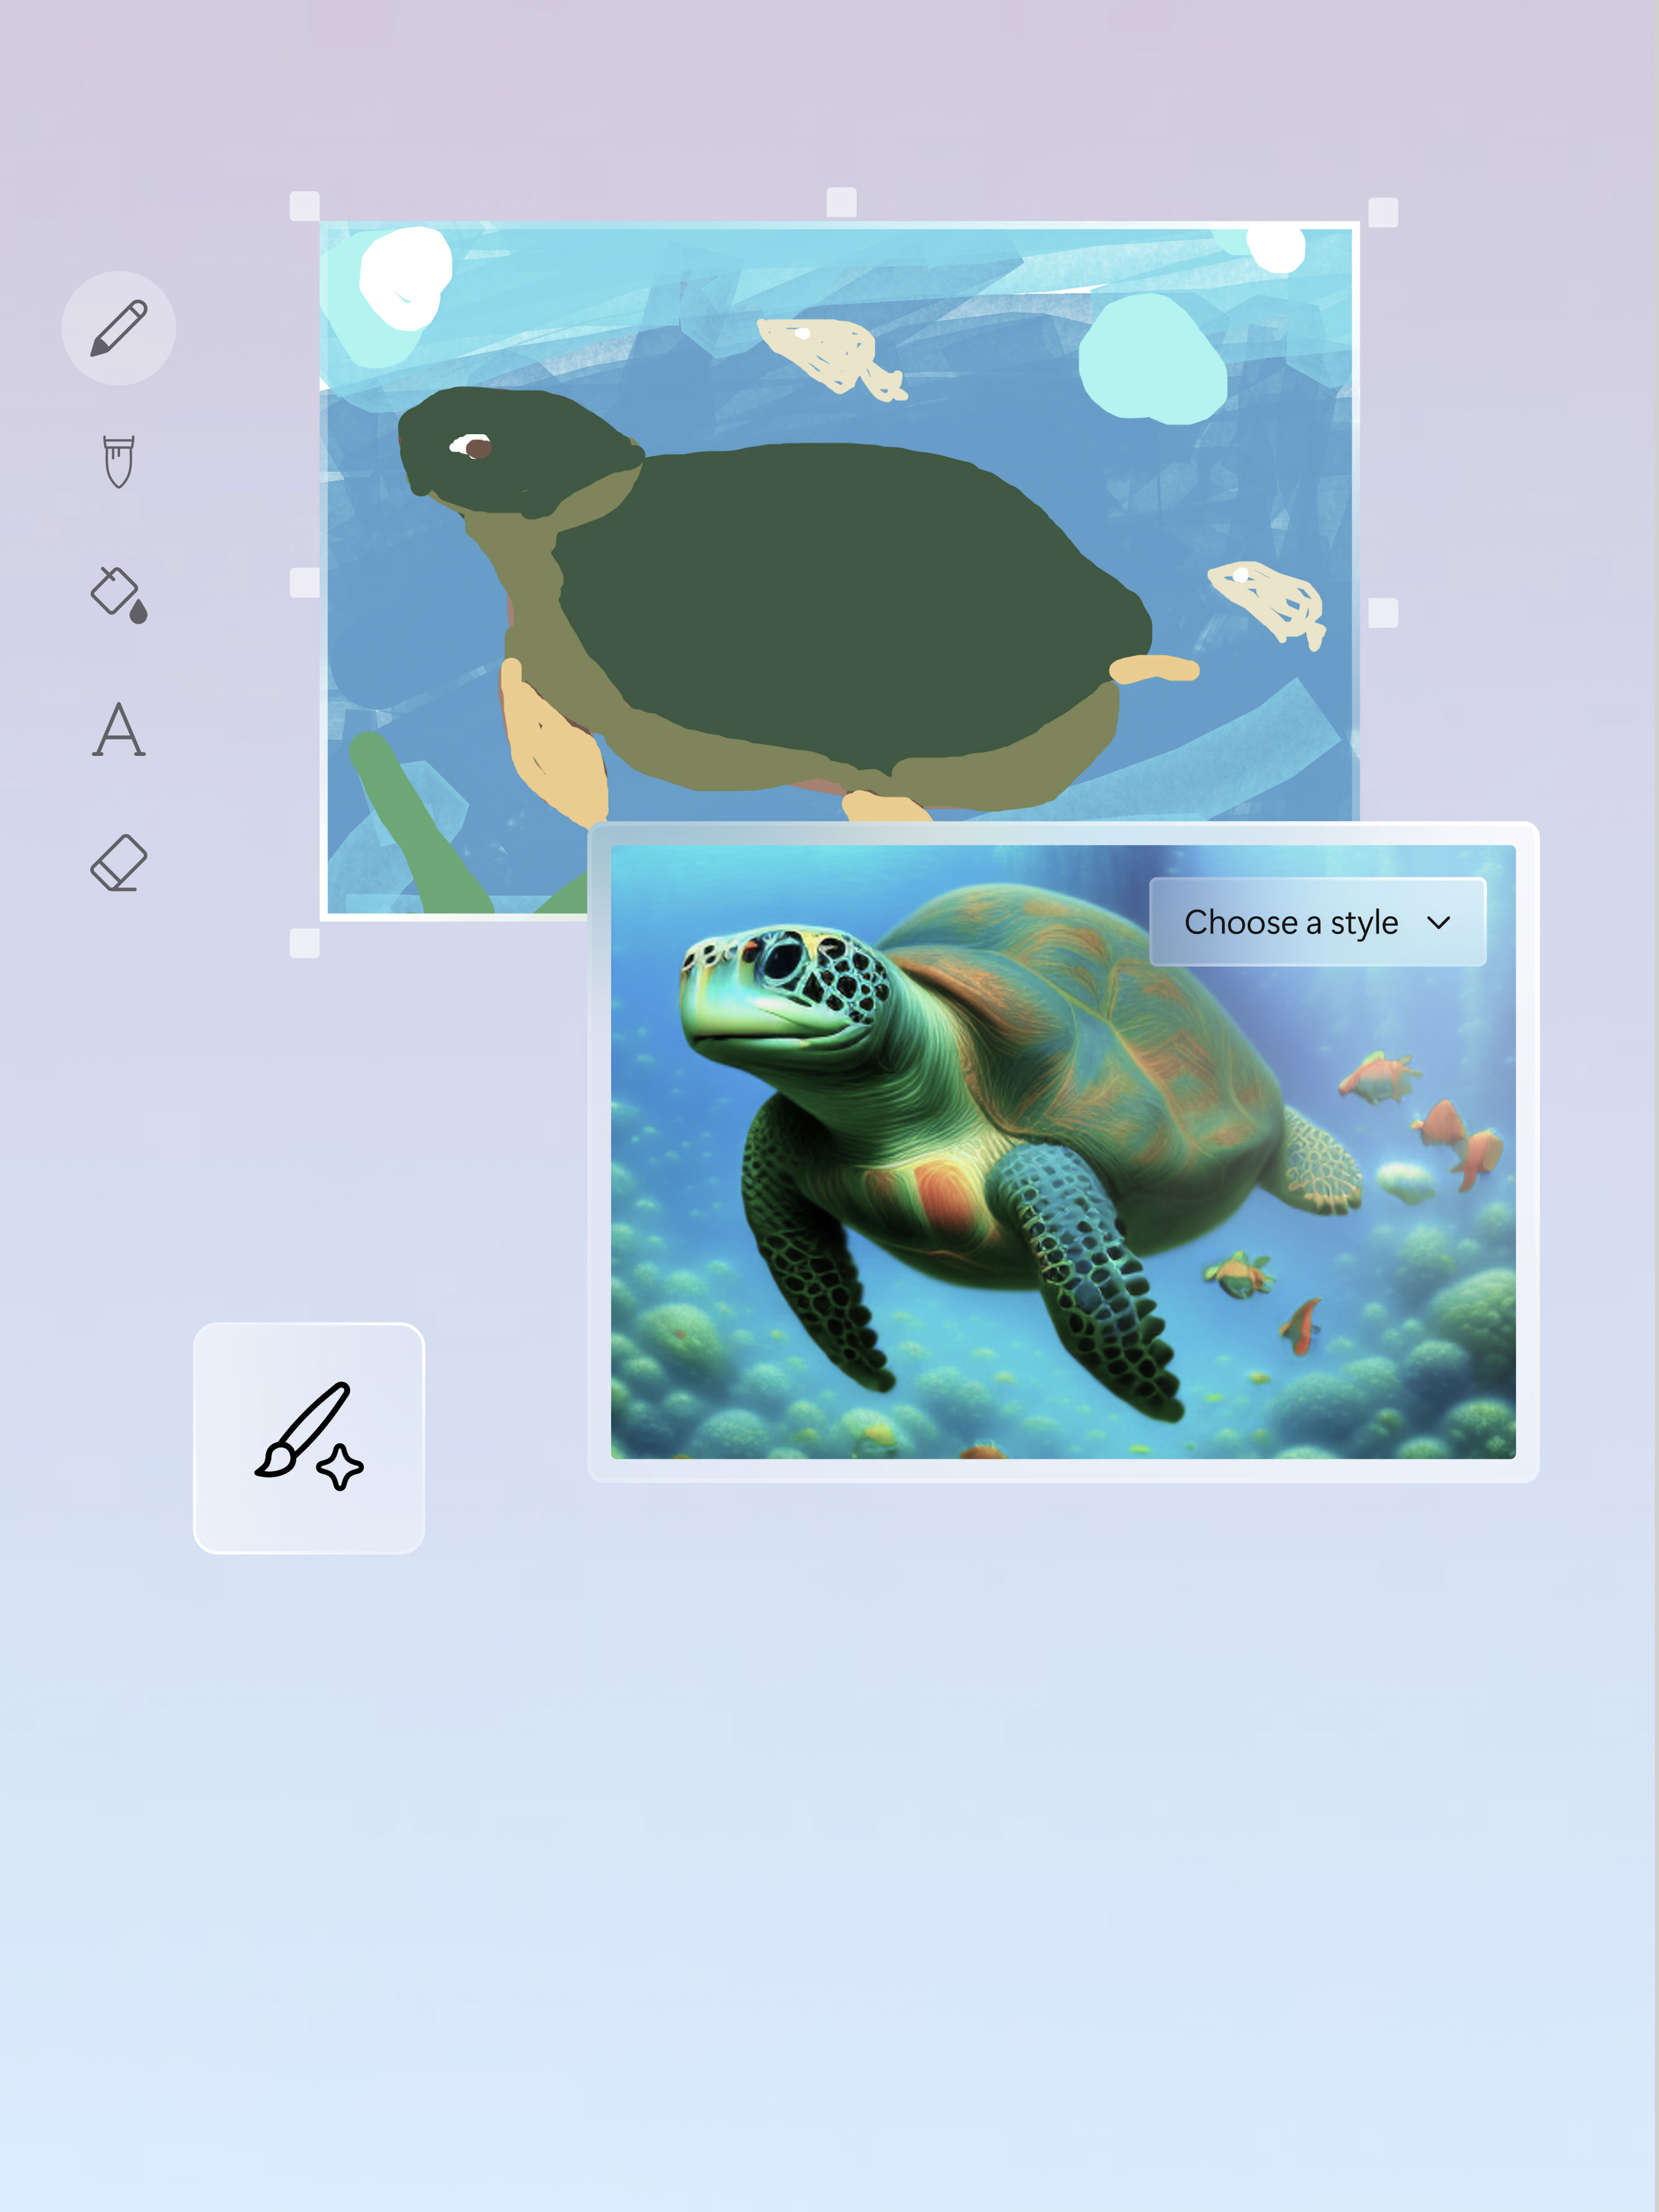 Una presentación e imagen de una tortuga por un artista